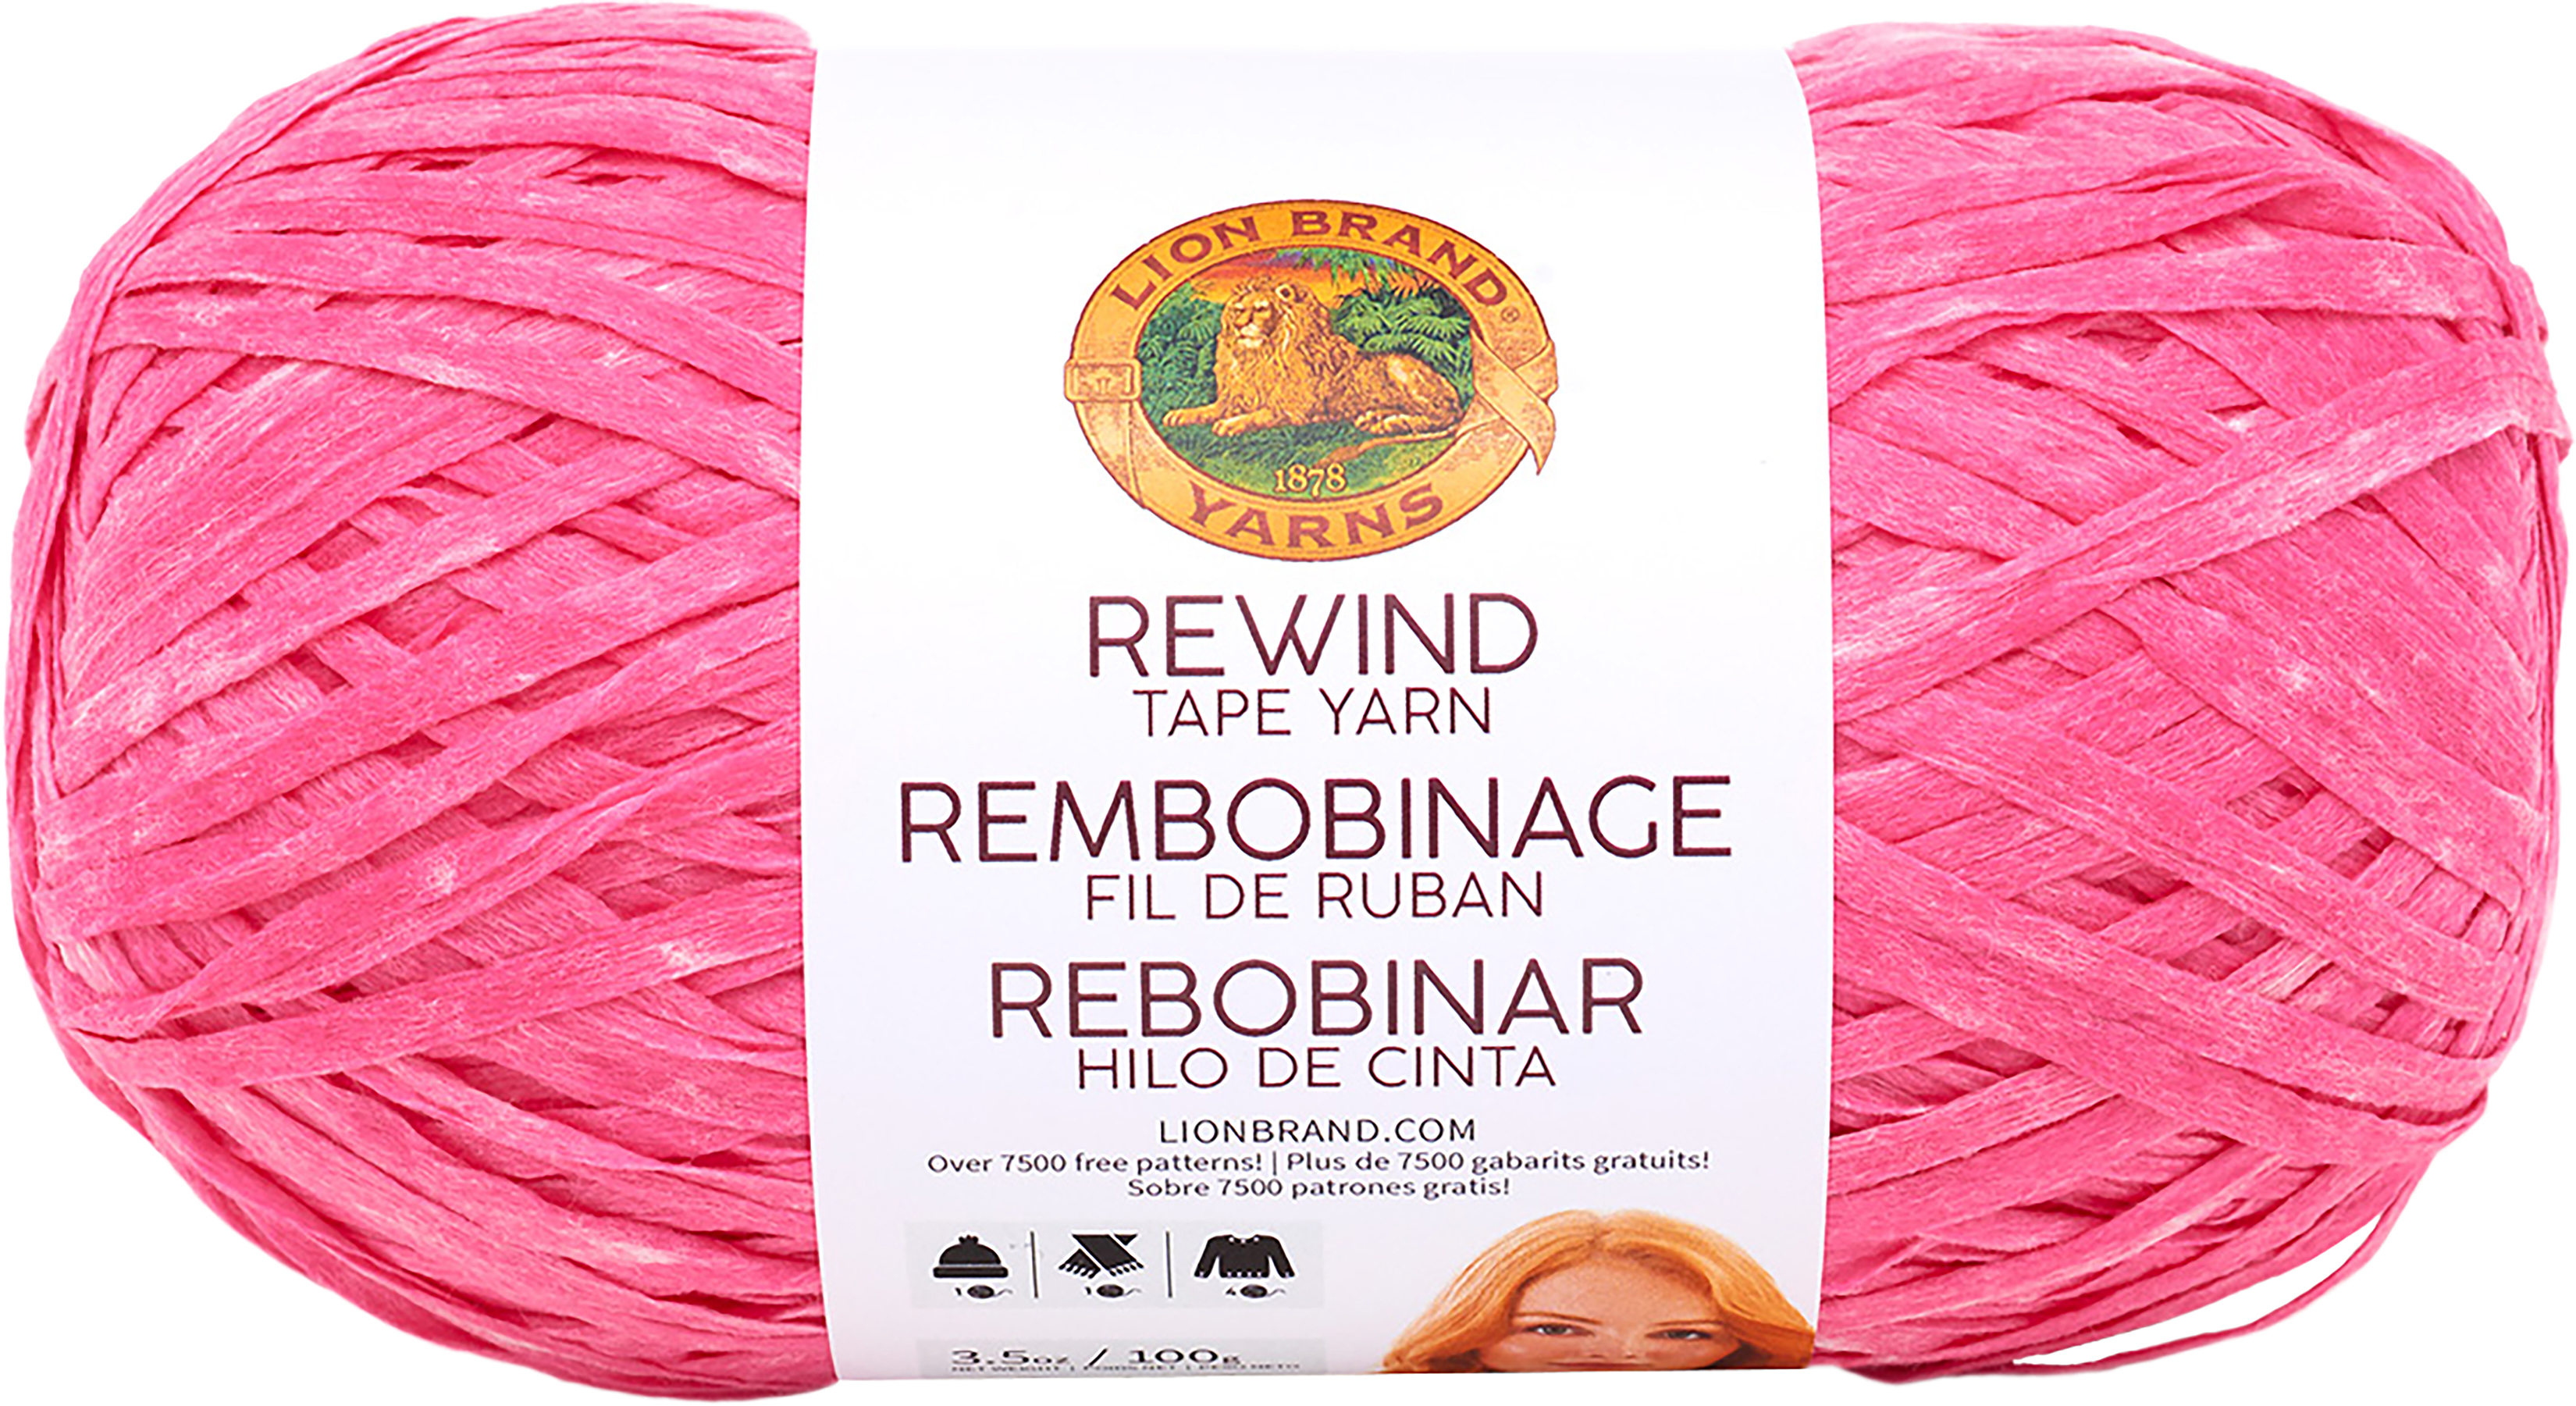 lion brand rewind yarn stores